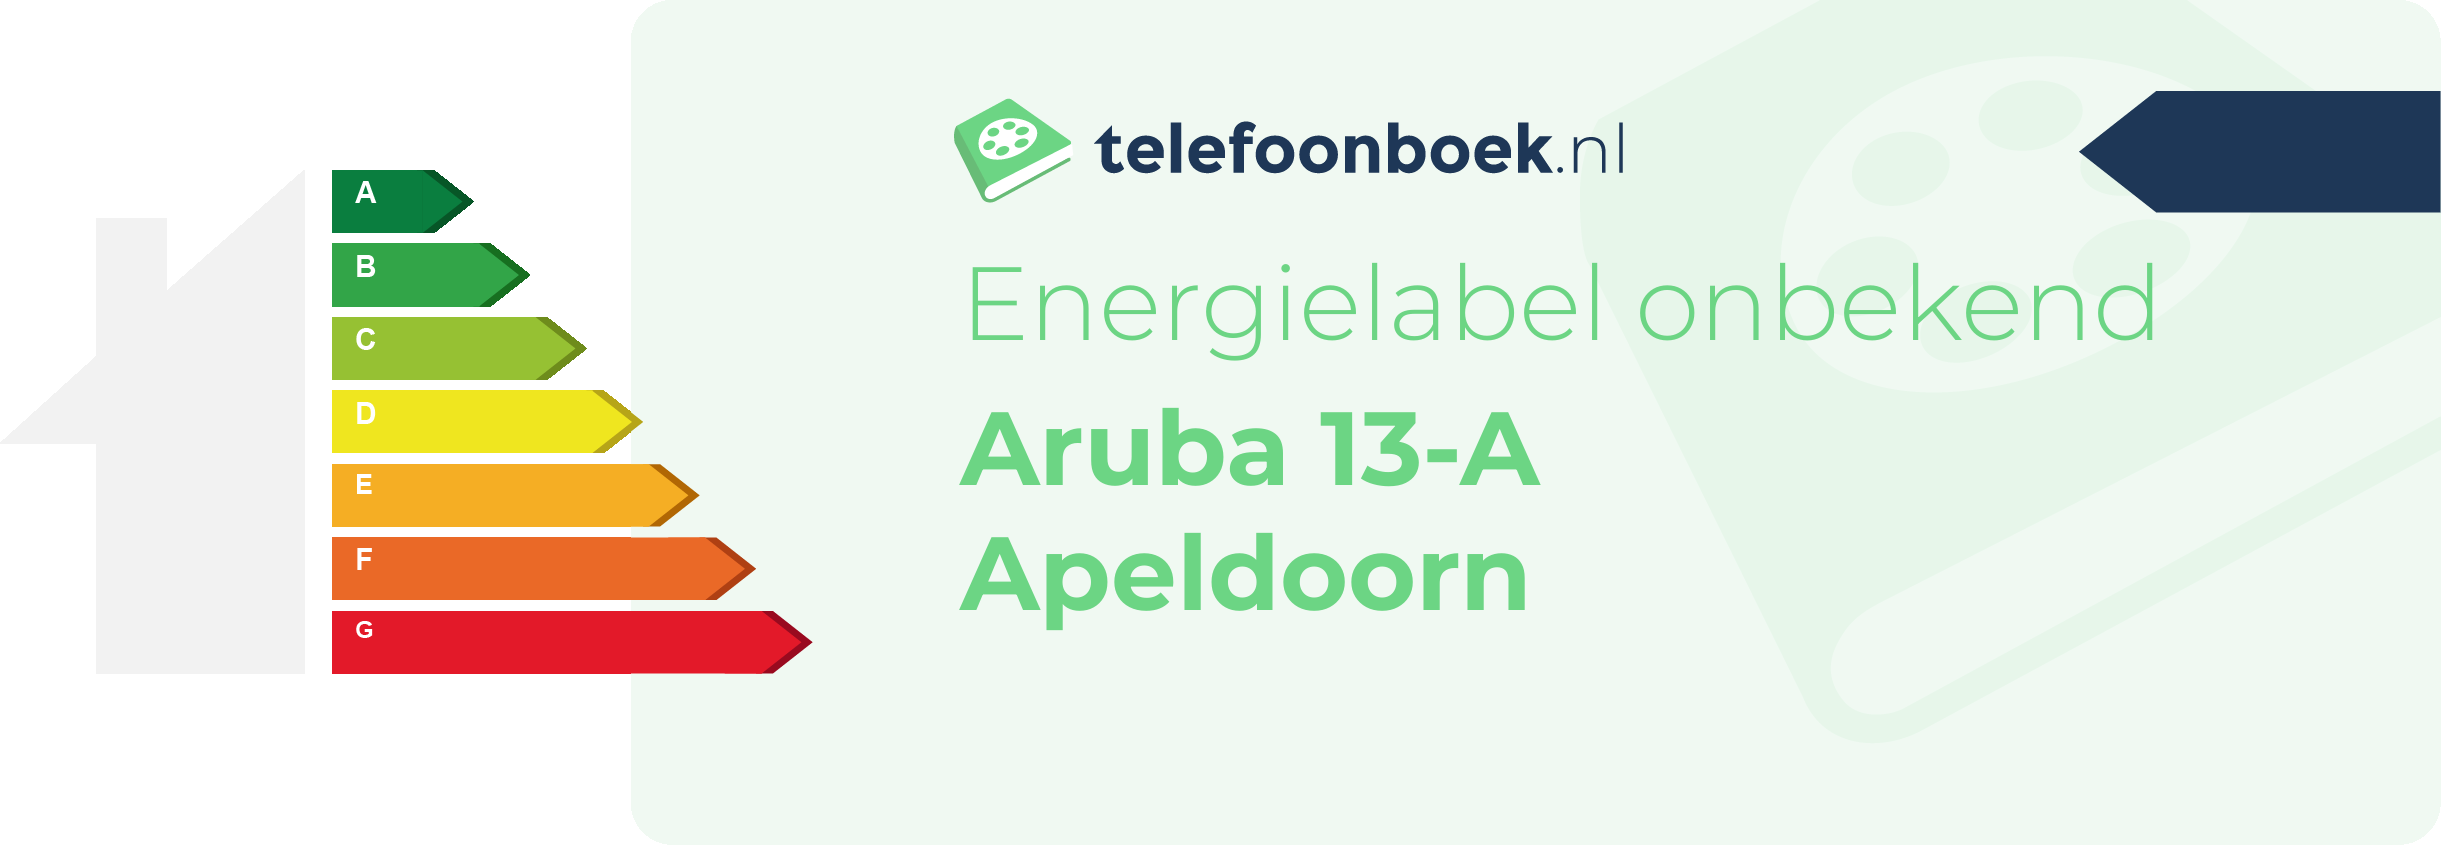 Energielabel Aruba 13-A Apeldoorn